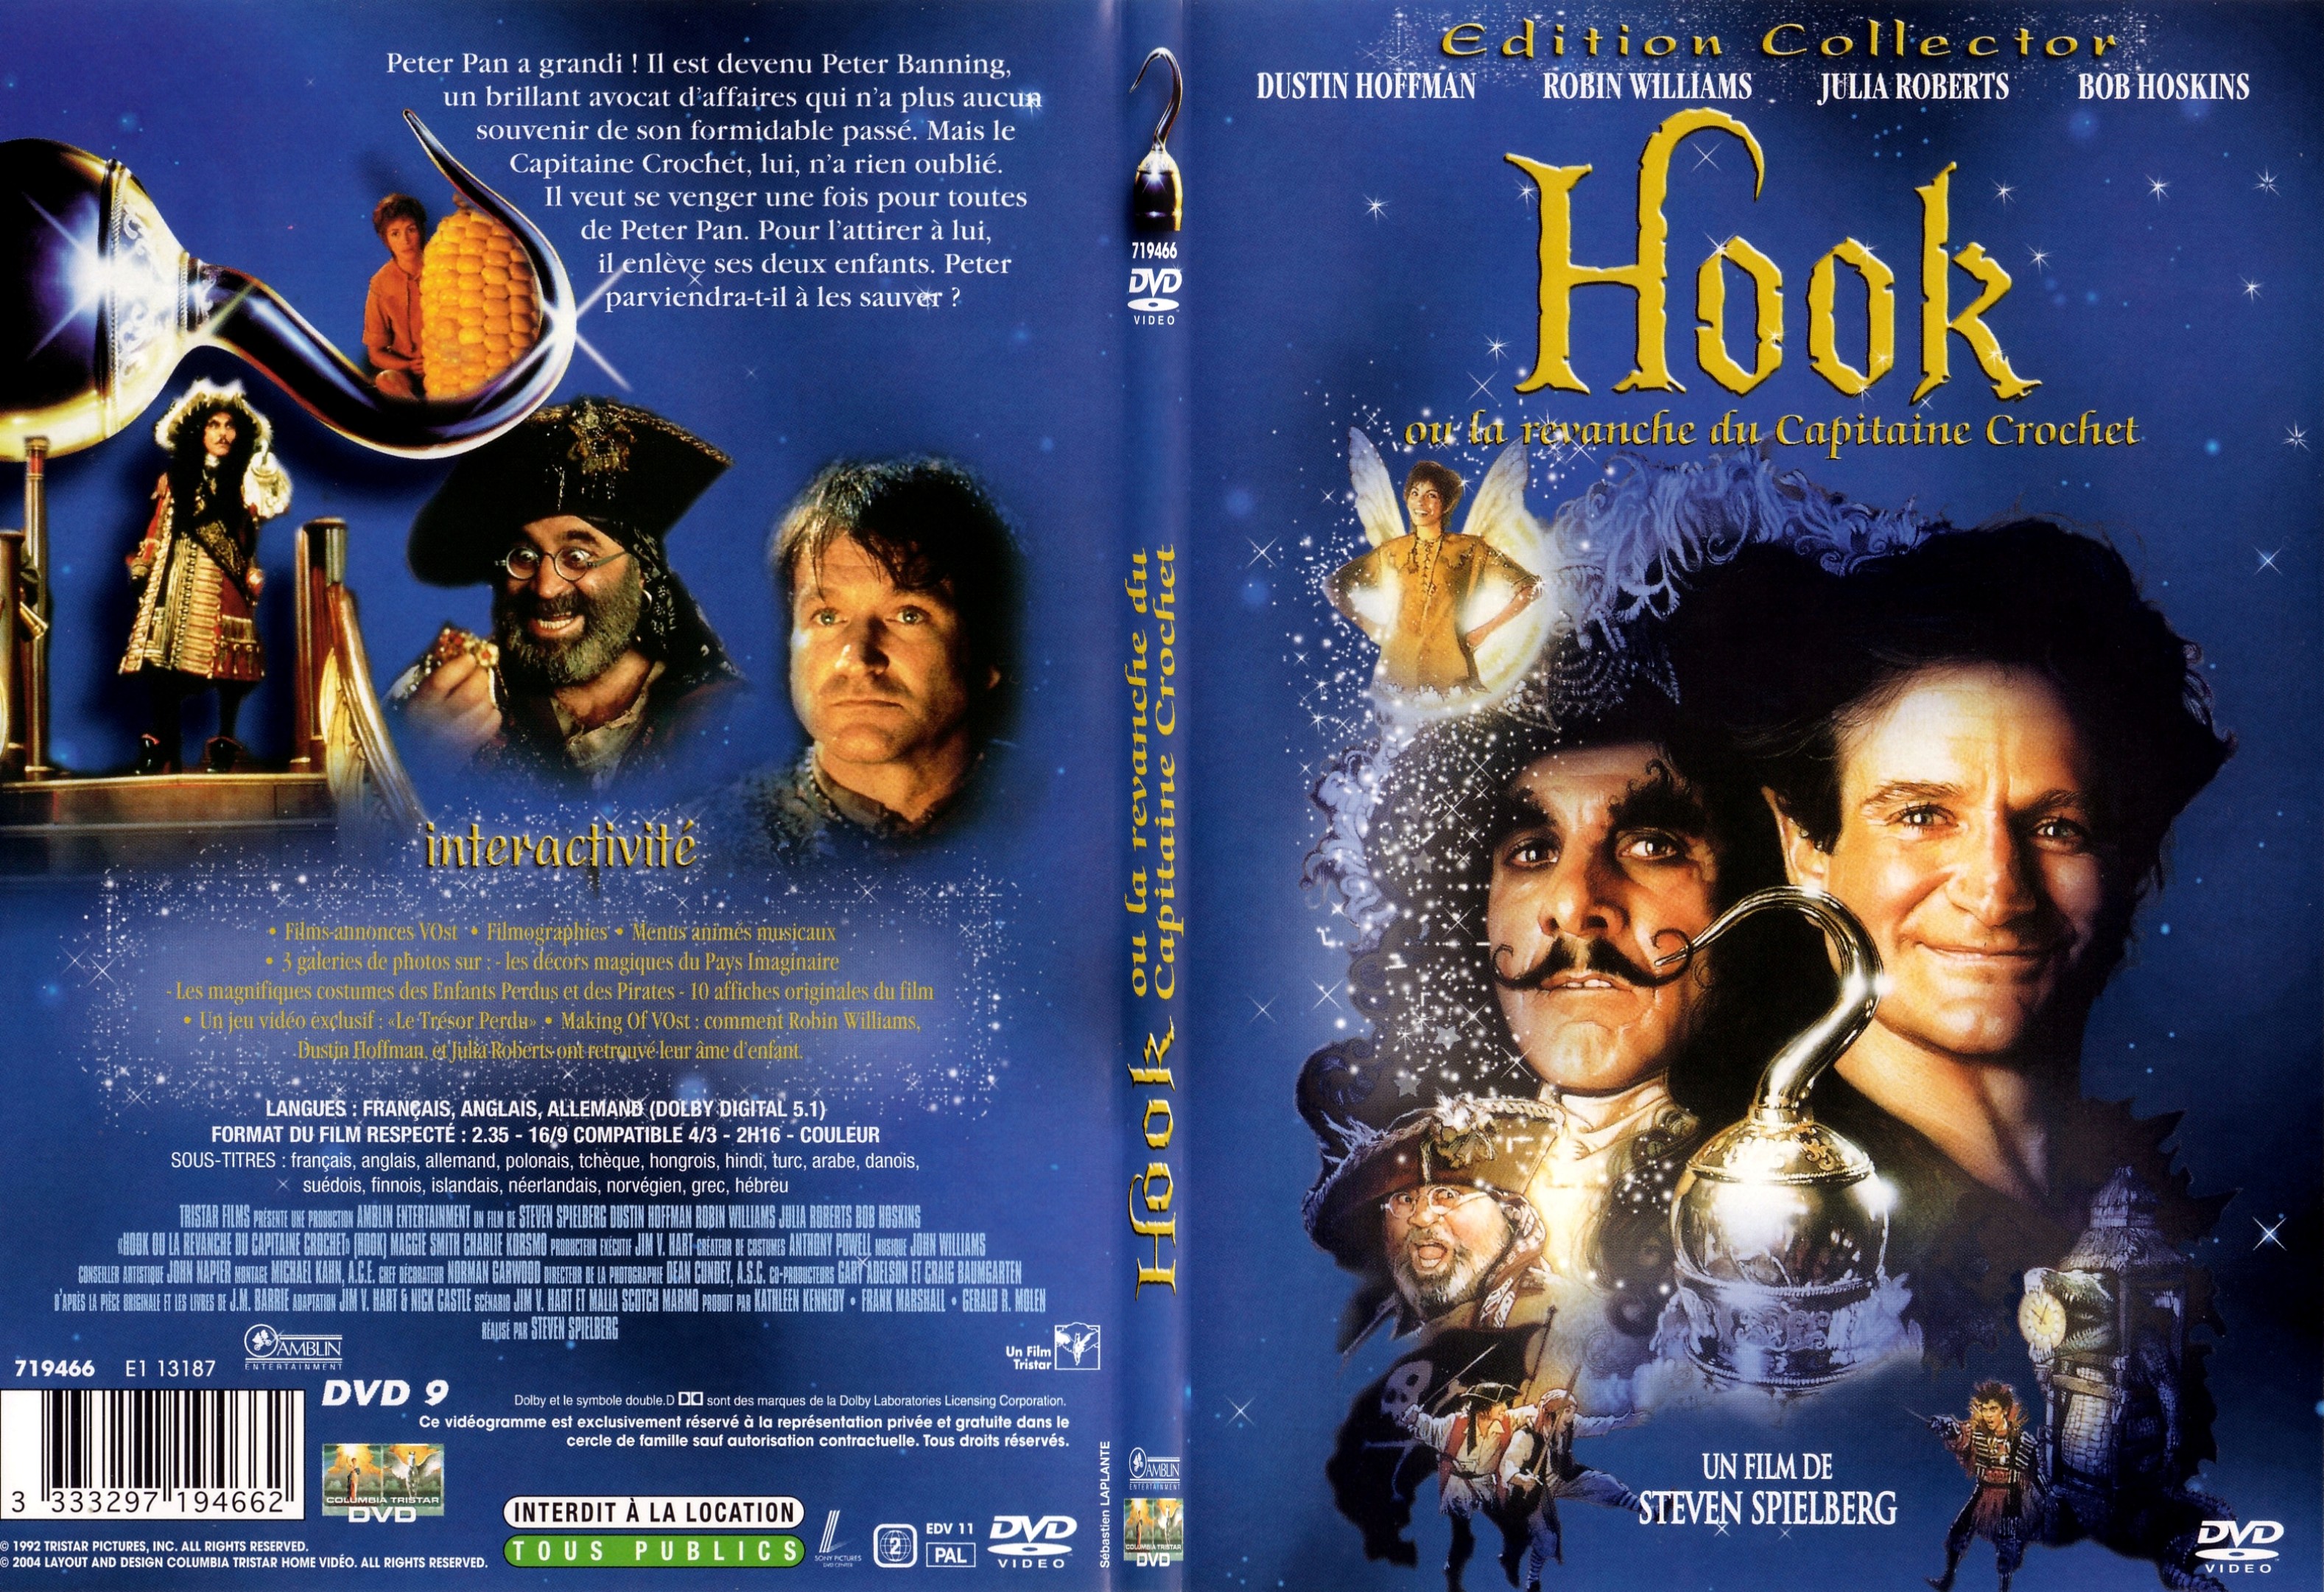 Jaquette DVD Hook - SLIM v3